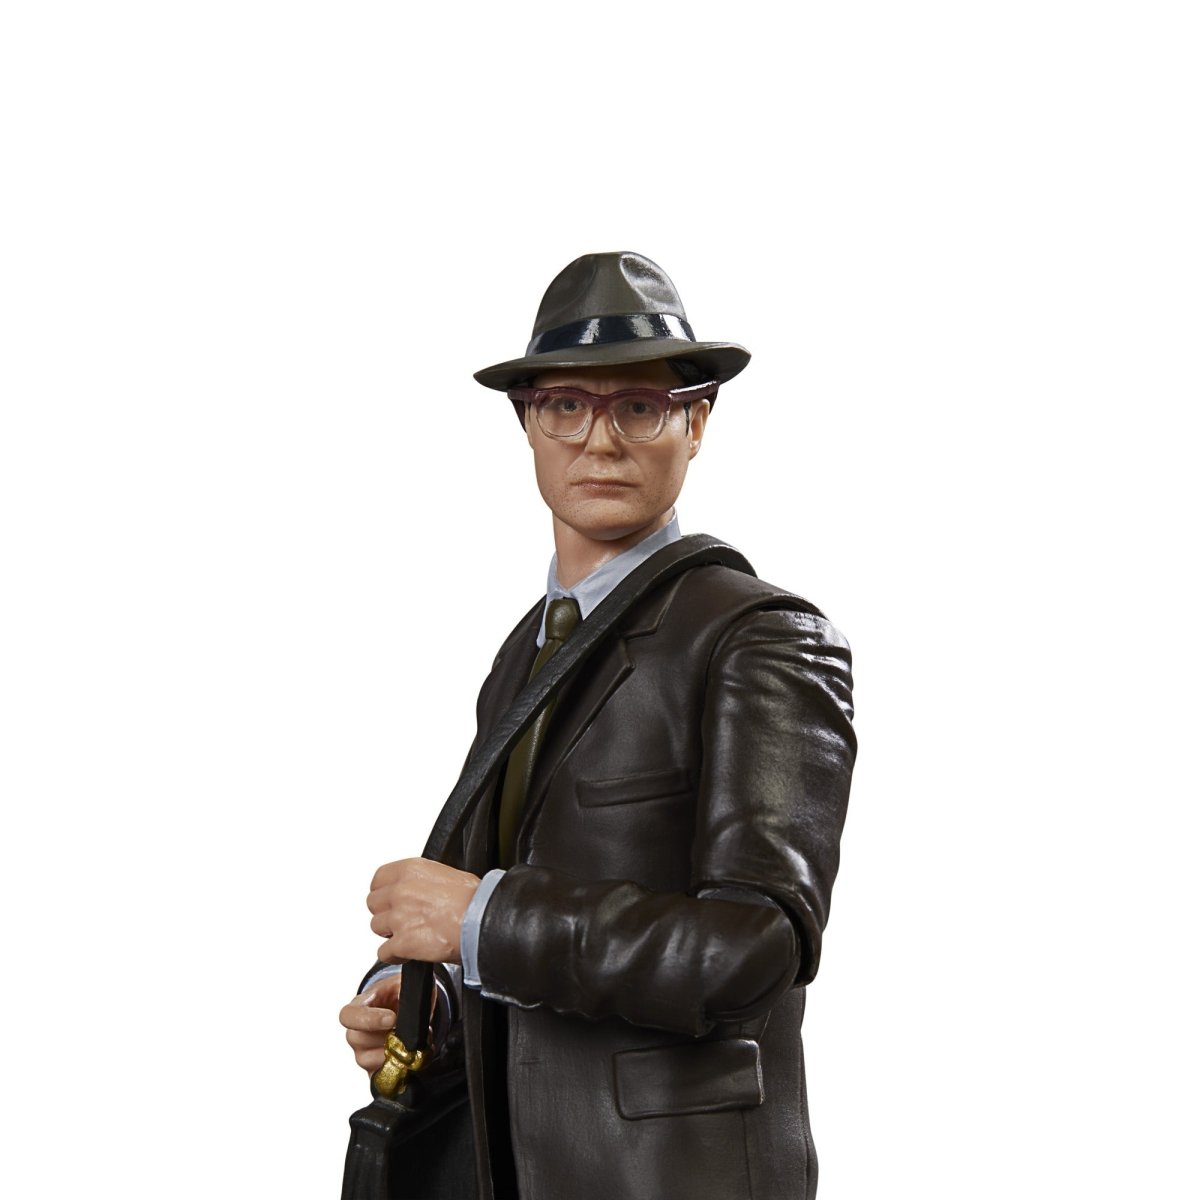 Indiana Jones Adventure Series Doctor Jürgen Voller 6-Inch Action Figure Pop-O-Loco